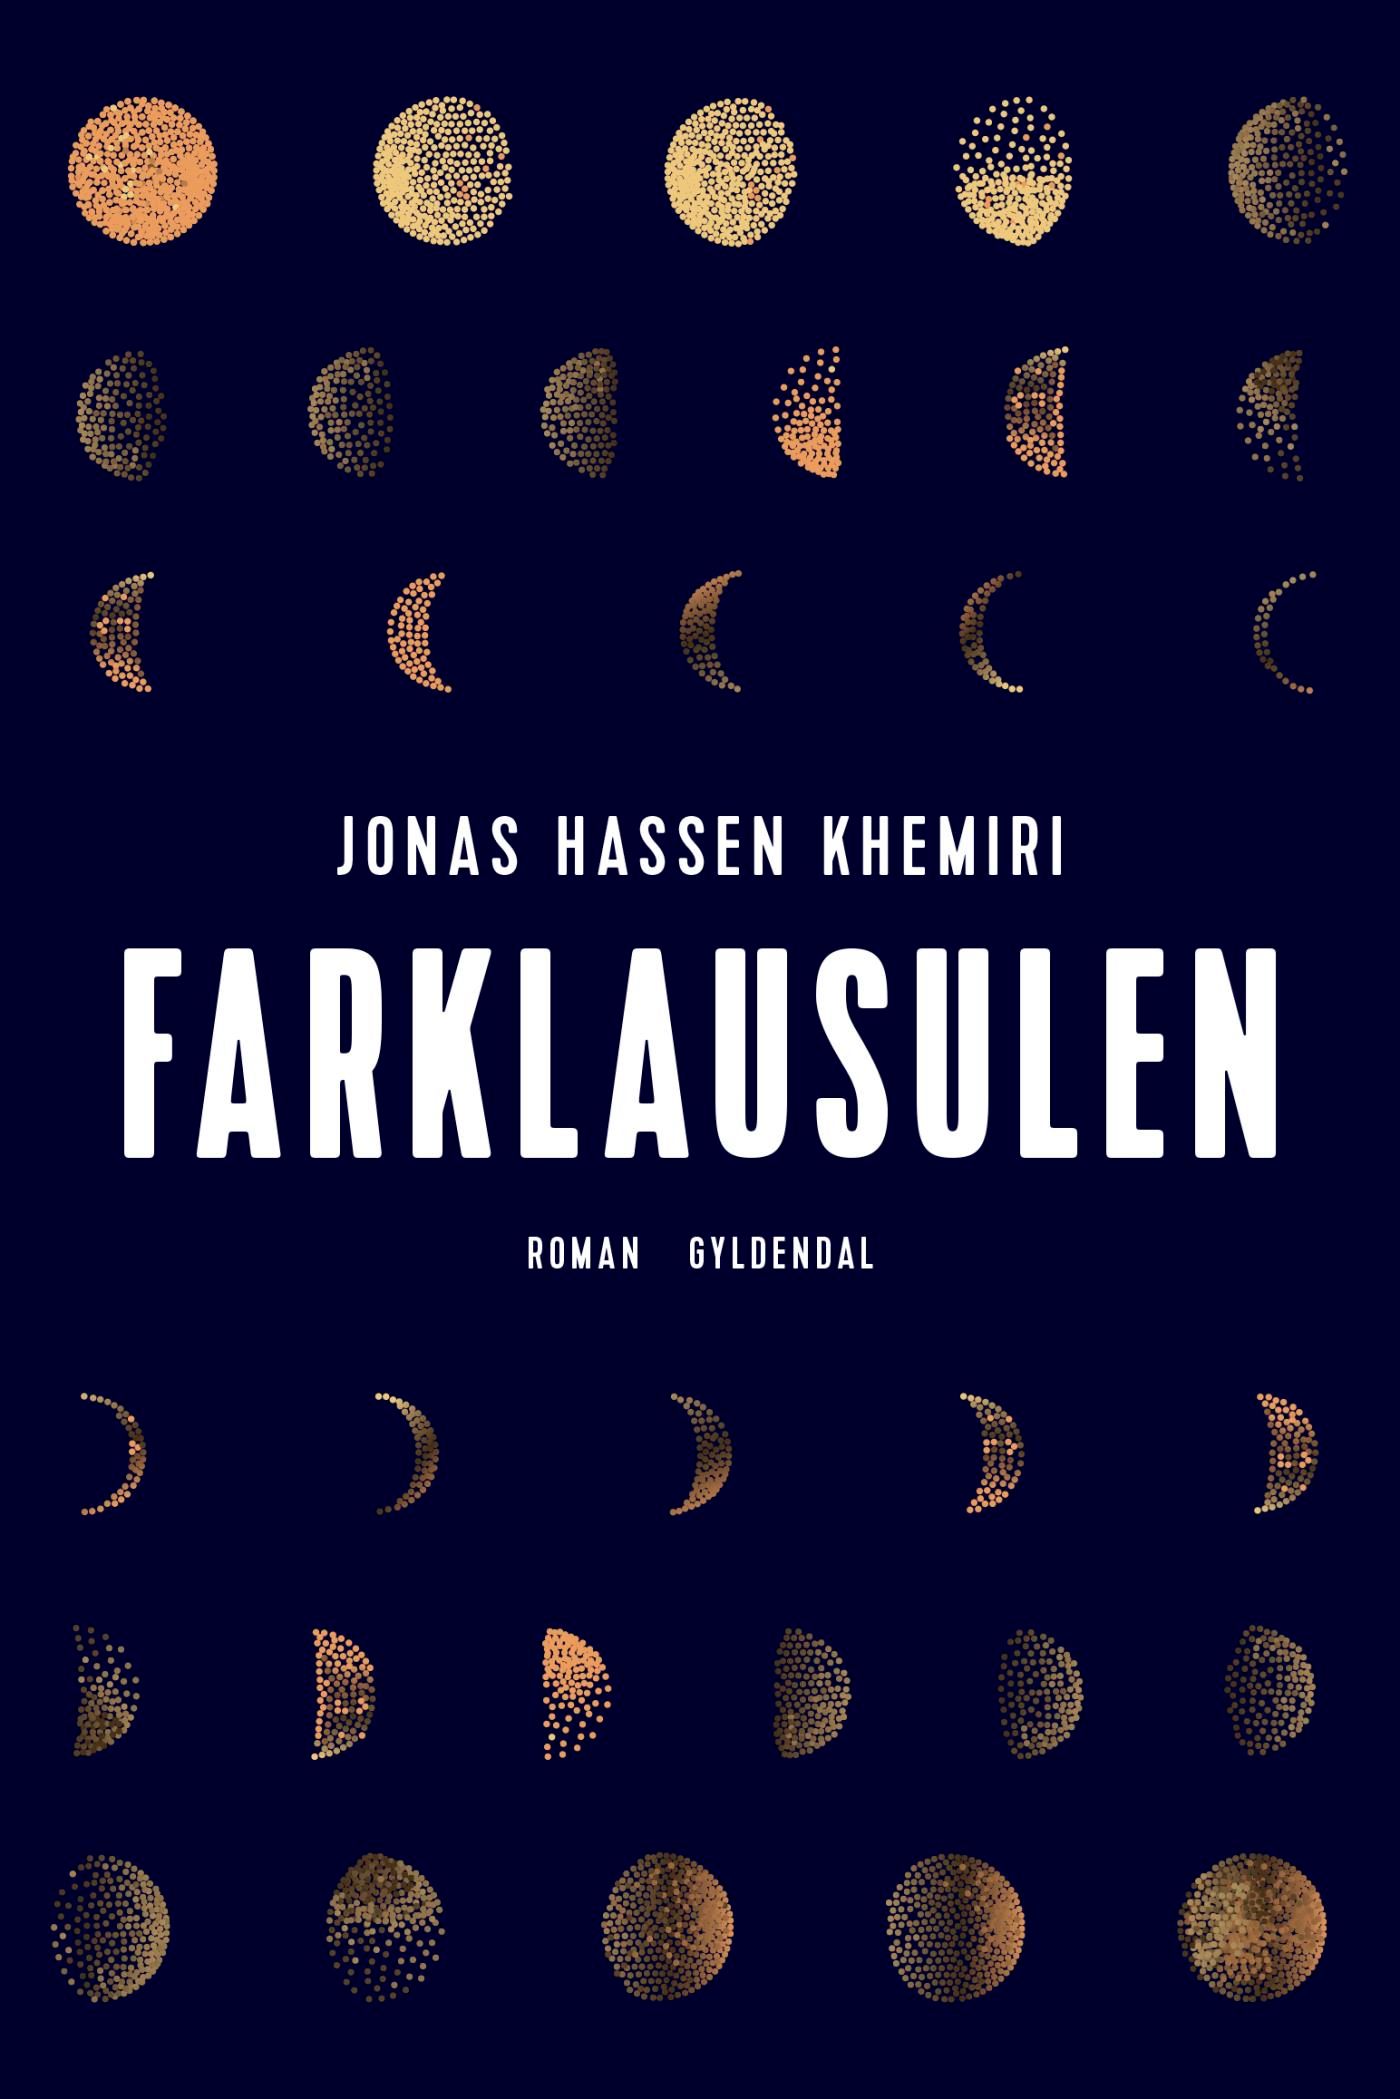 Farklausulen, eBook by Jonas Hassen Khemiri